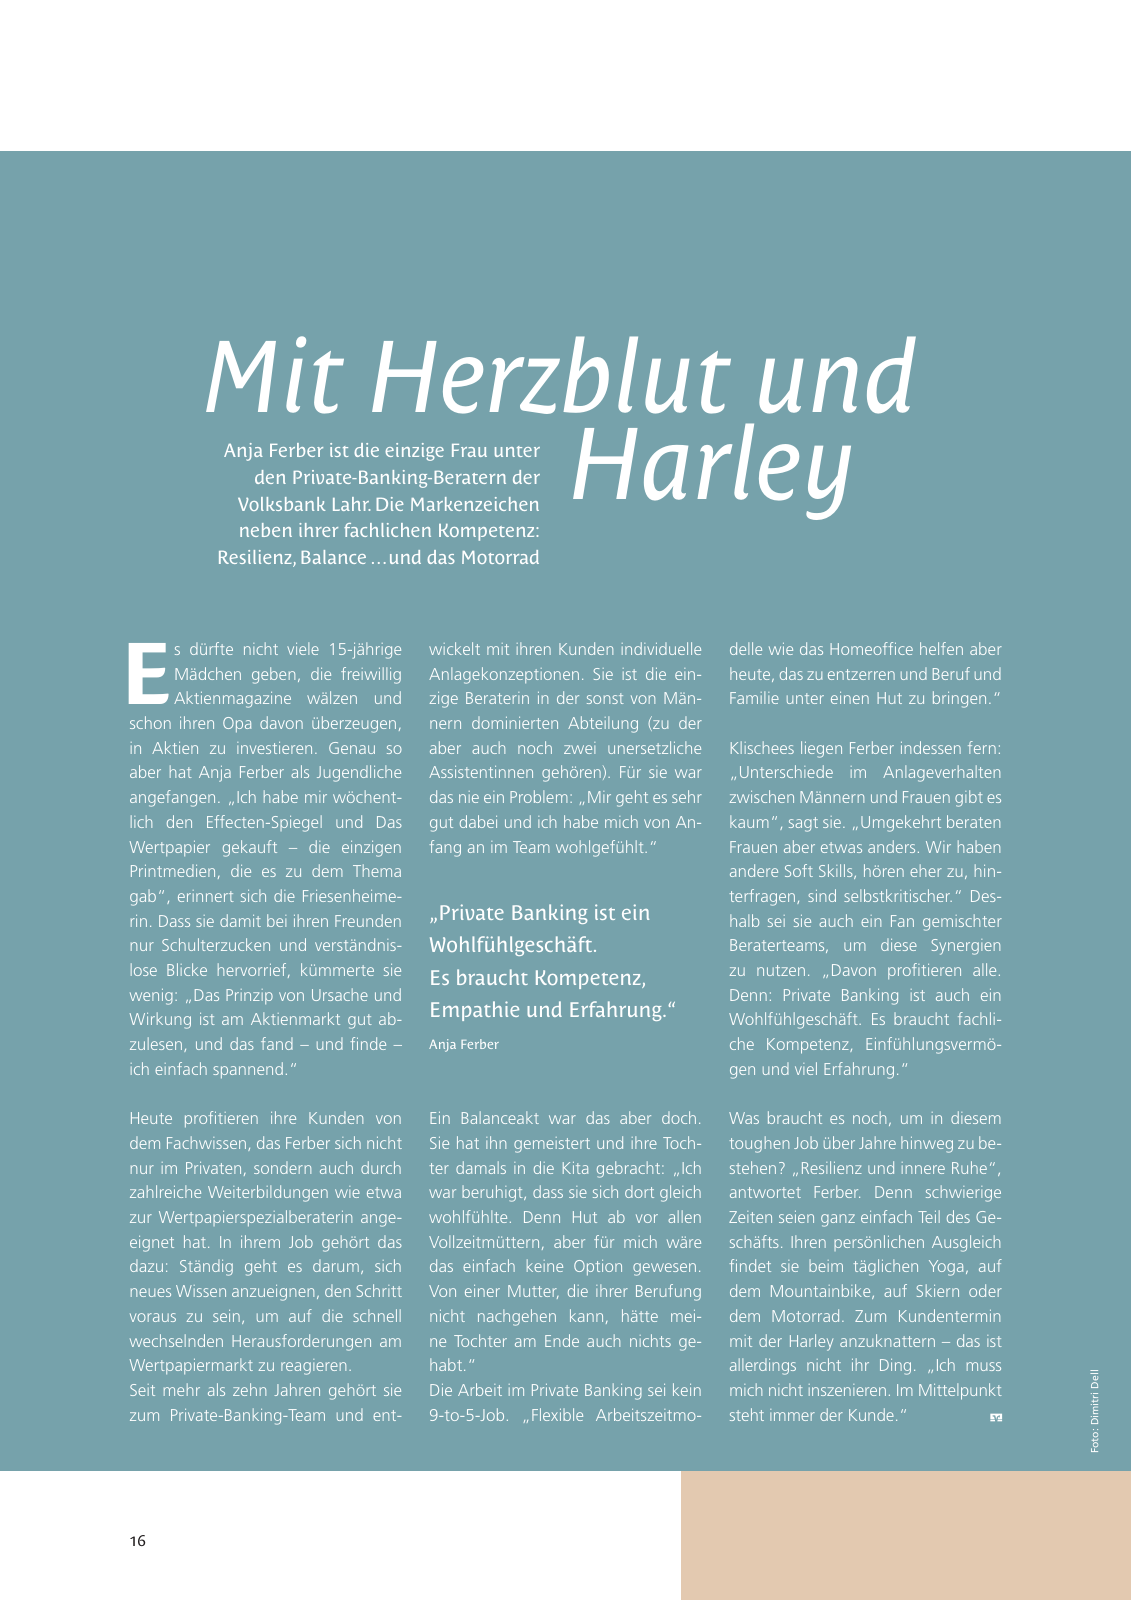 Vorschau shero - Unser Magazin für Heldinnen - Ausgabe 2 Seite 16